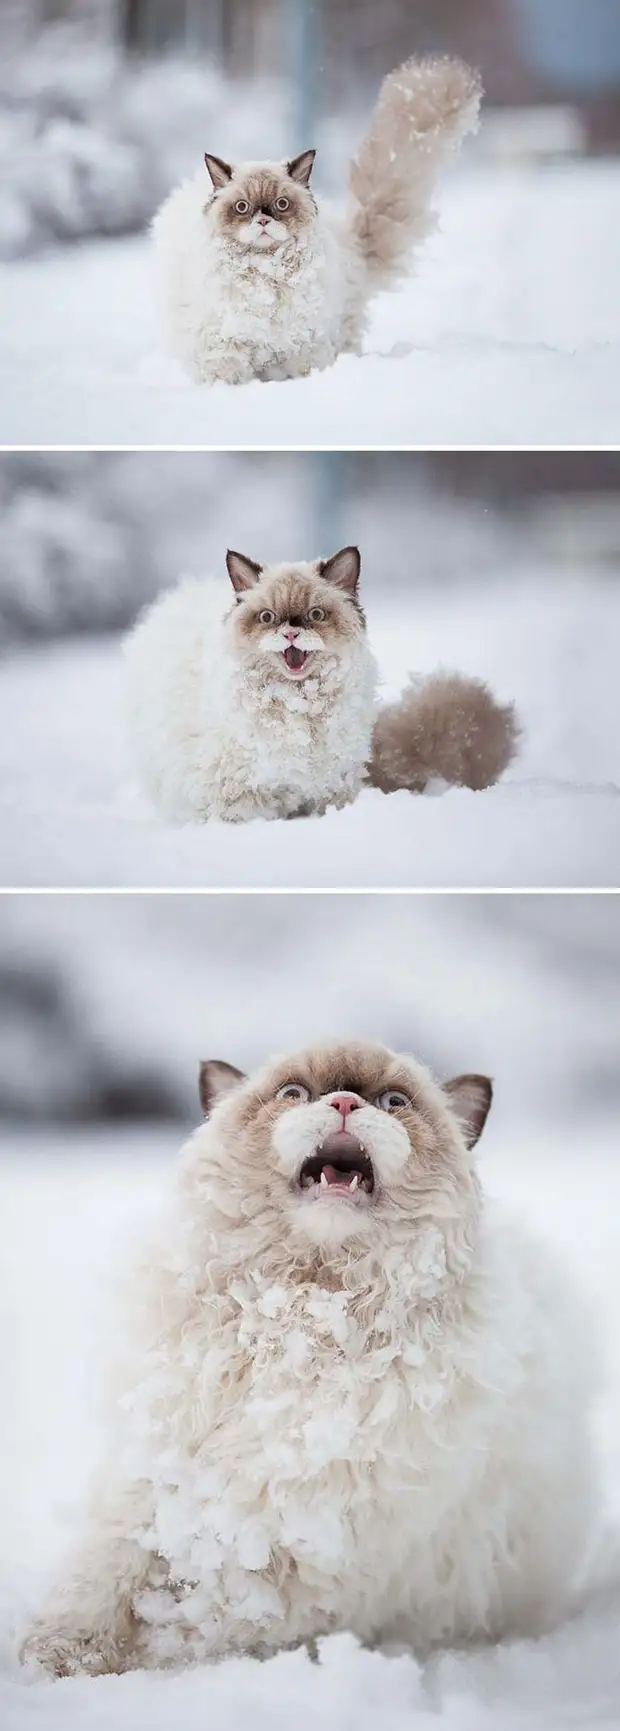 Фото №3 - Первый снег: кошки vs собаки (много уморительных фото)